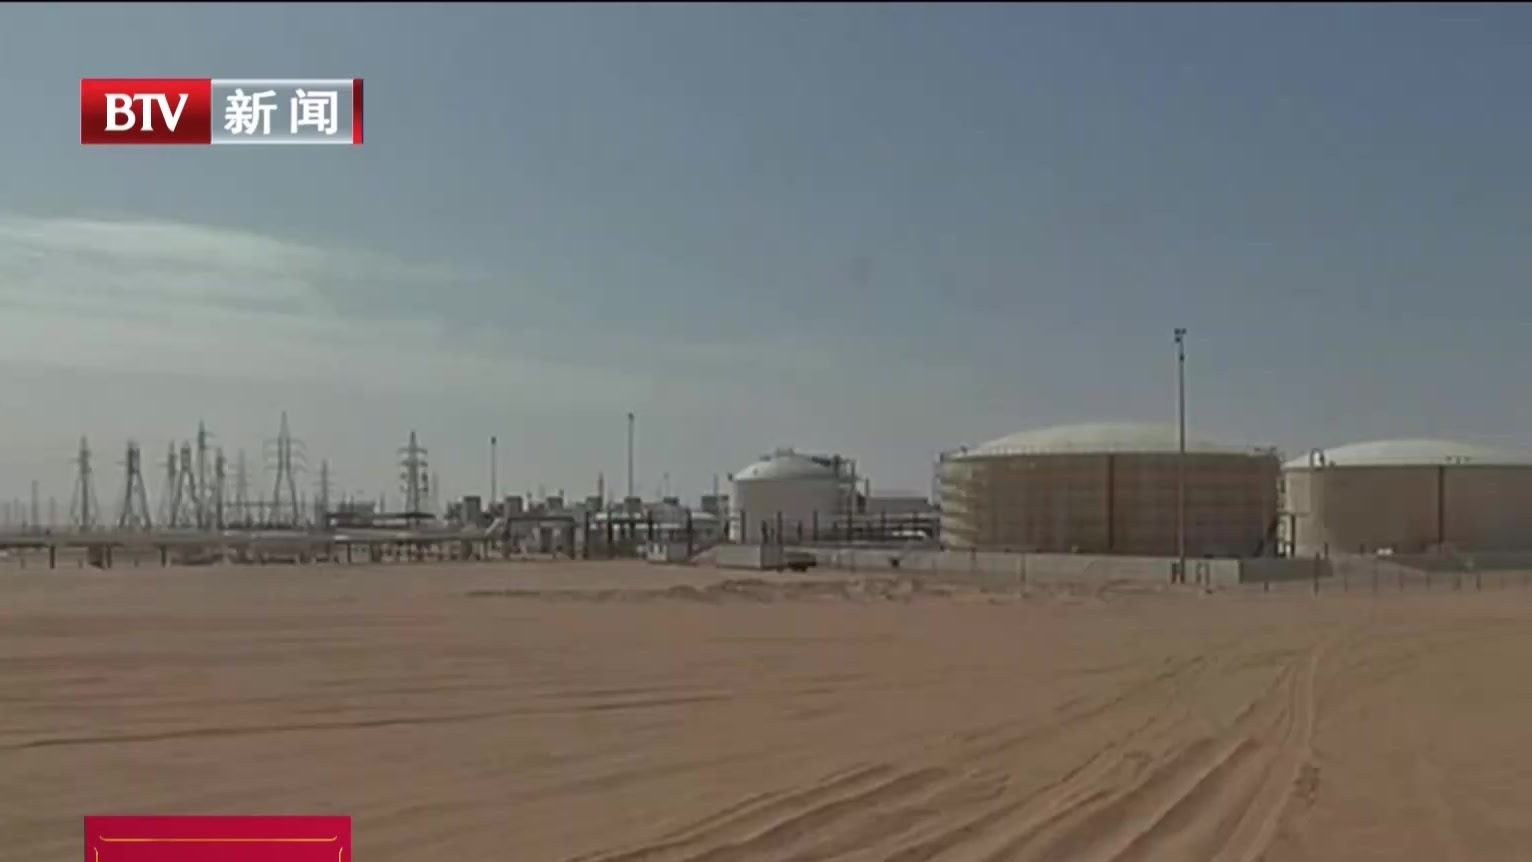 利比亚原油生产和出口再次被迫暂停